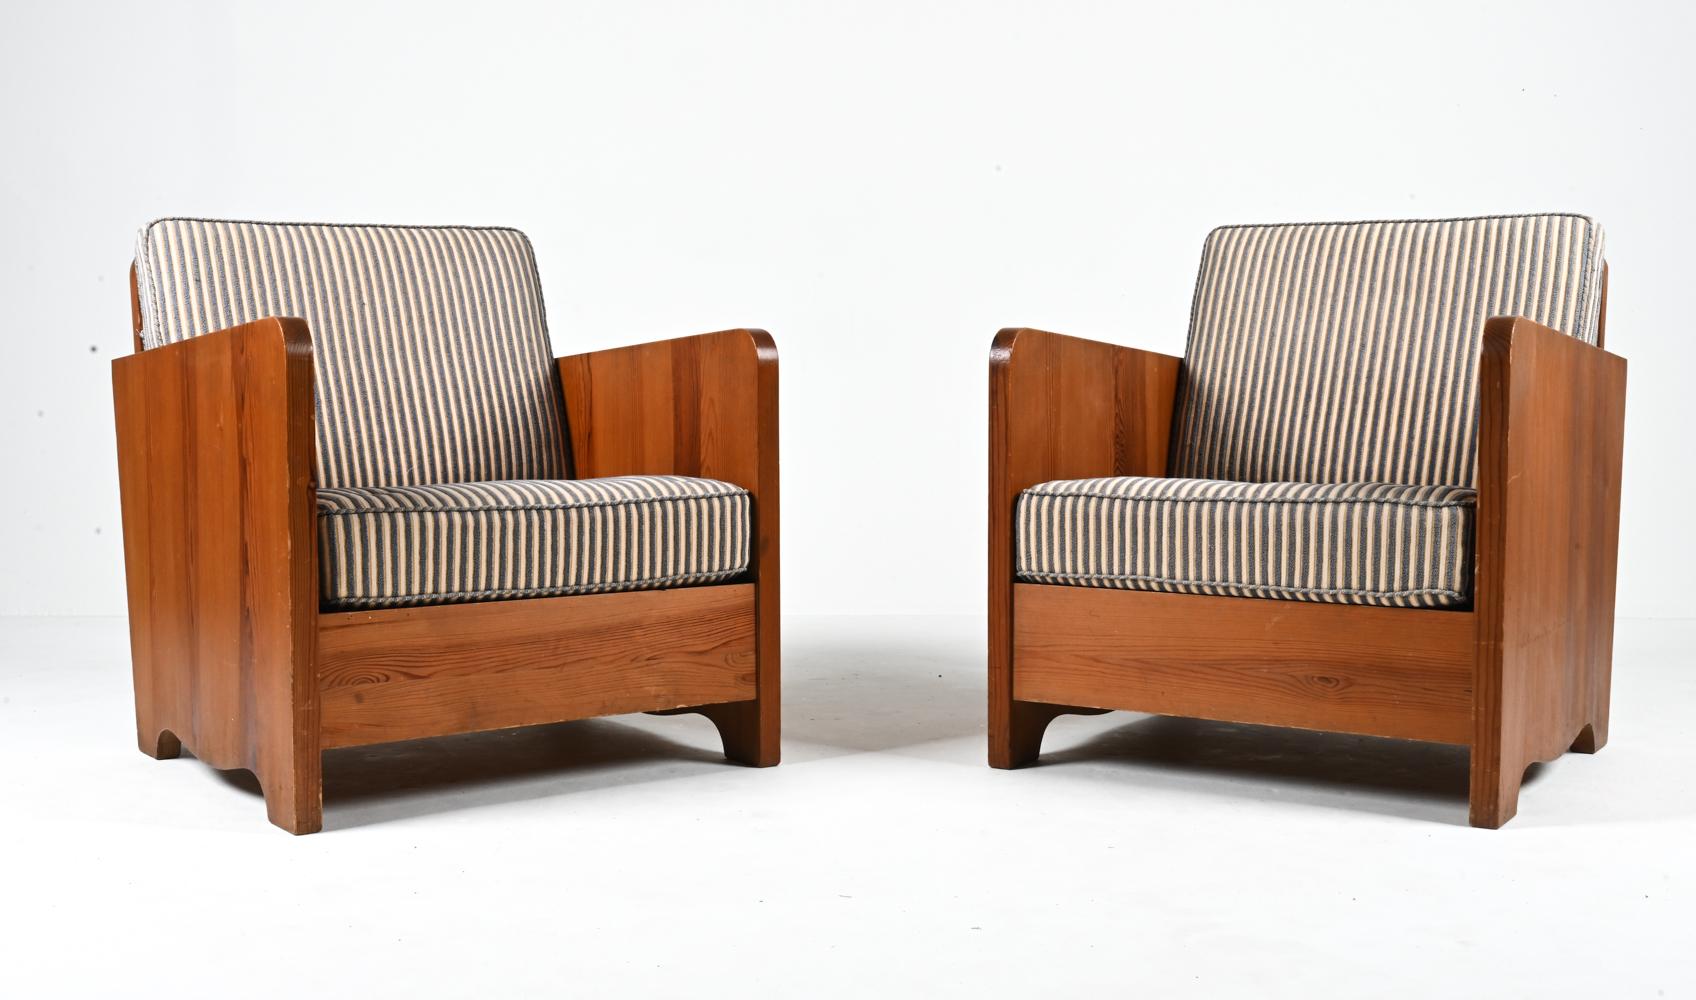 Ajoutez une dose tout à fait unique de charme rustique avec cette paire exceptionnelle de fauteuils Early Modern attribués à Axel Einar Hjorth. Luxuriez dans la riche texture naturelle des cadres en pin massif tandis que les épais coussins à